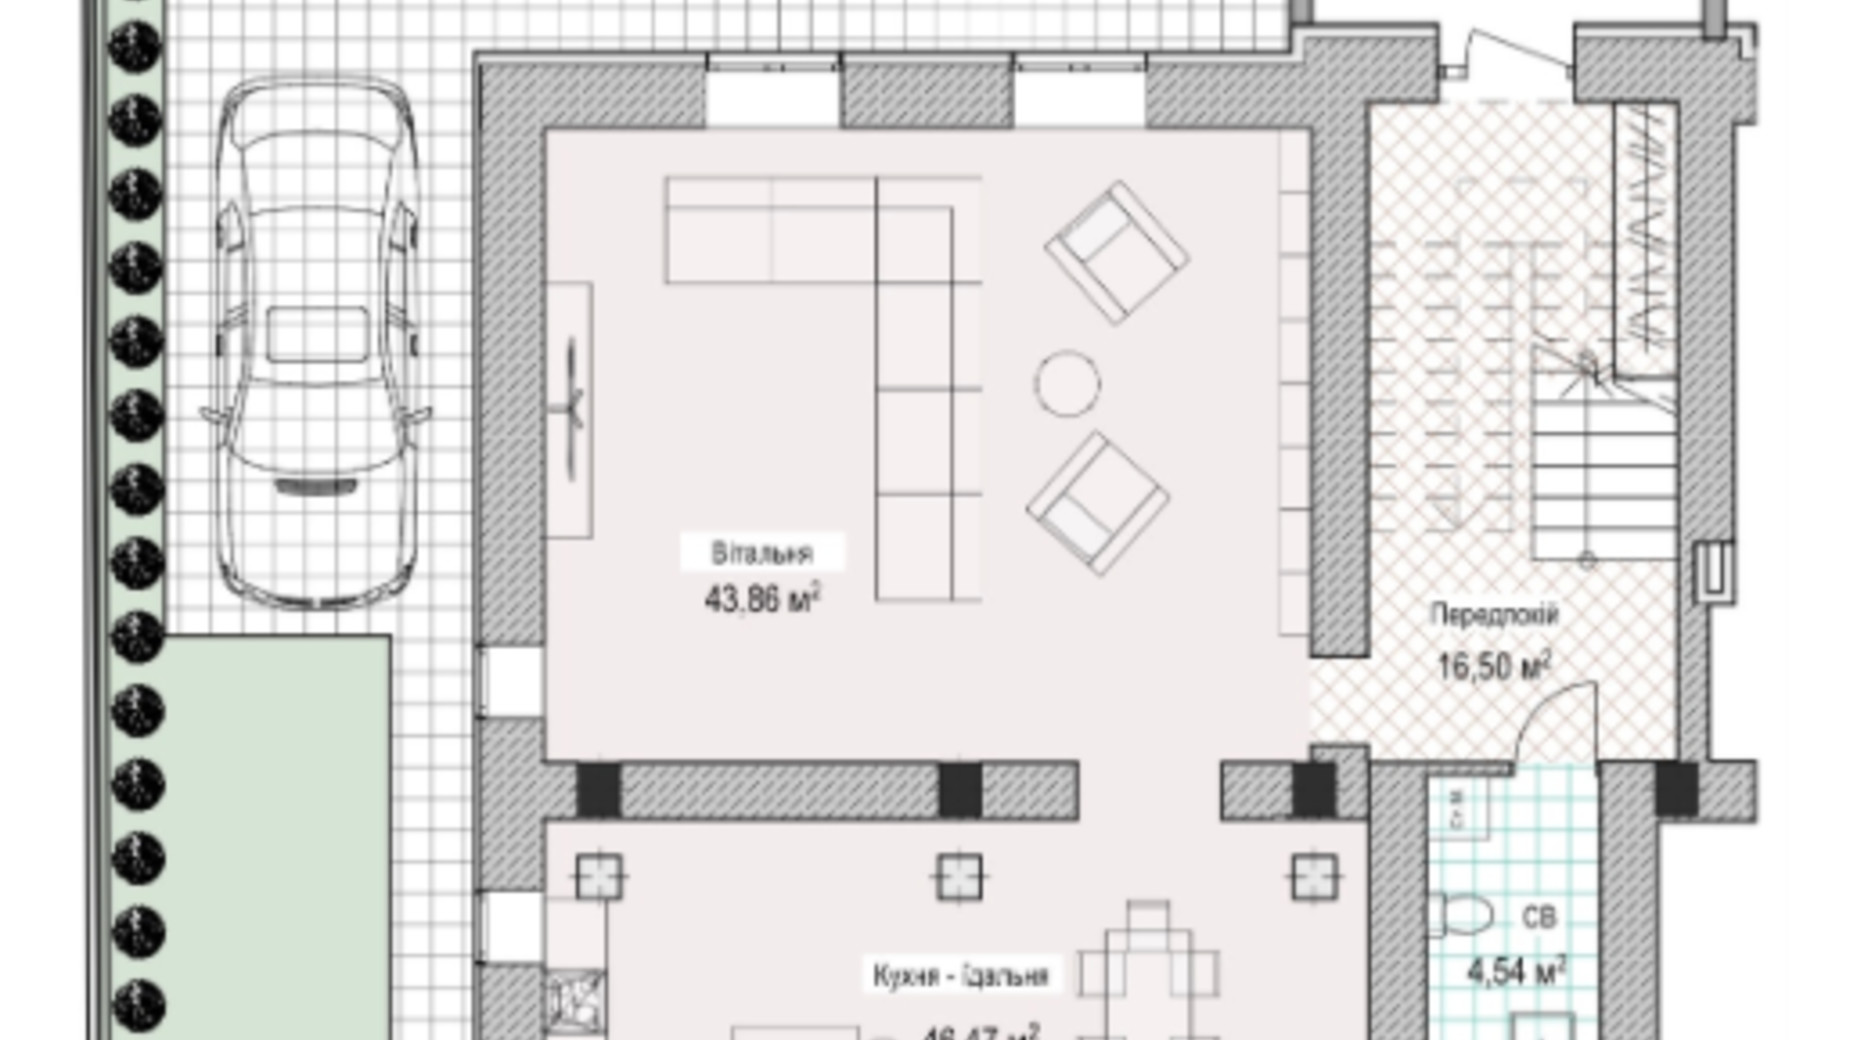 Планировка много­уровневой квартиры в ЖК Notting Hill 228.4 м², фото 320963